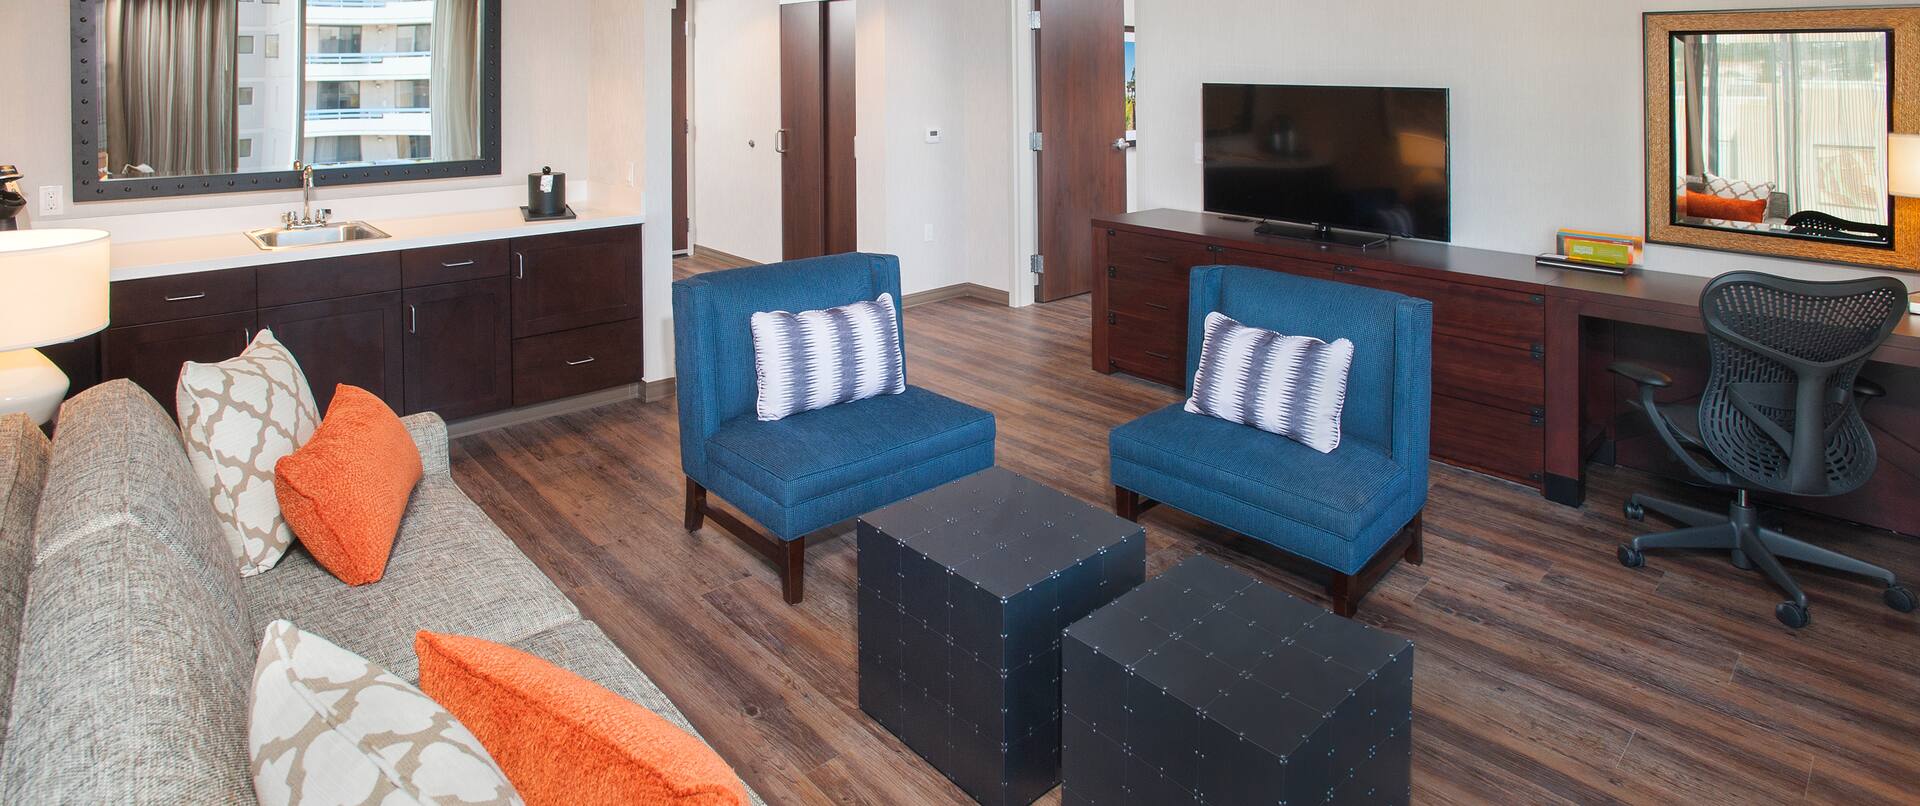 Living Area of 1 Bedroom Suite with Sofa, Chairs, Wet Bar, Open Doorway to Bedroom, TV, and Work Desk